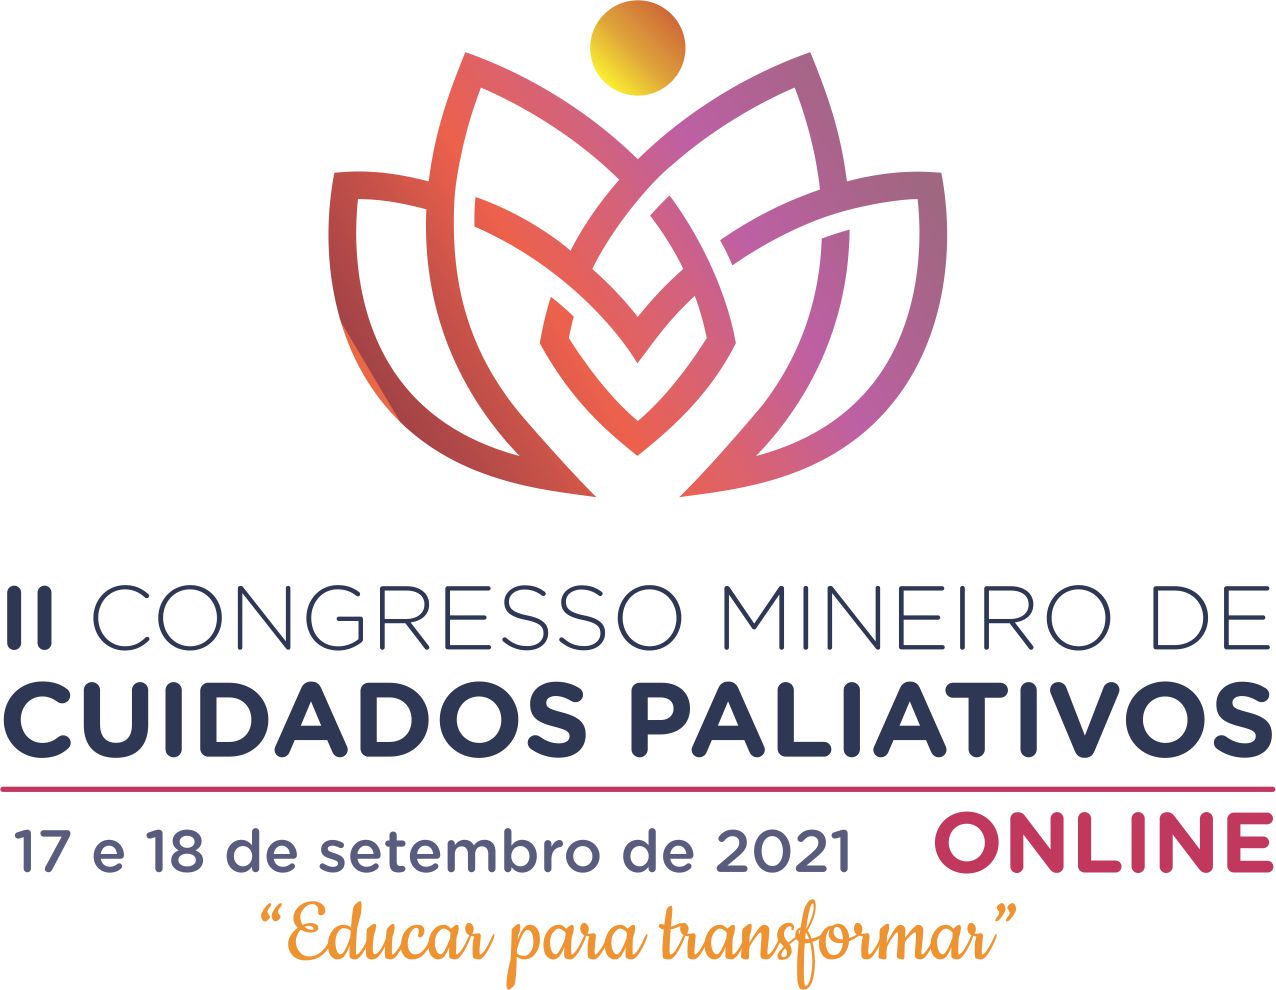 Participe do II Congresso Mineiro de Cuidados Paliativos